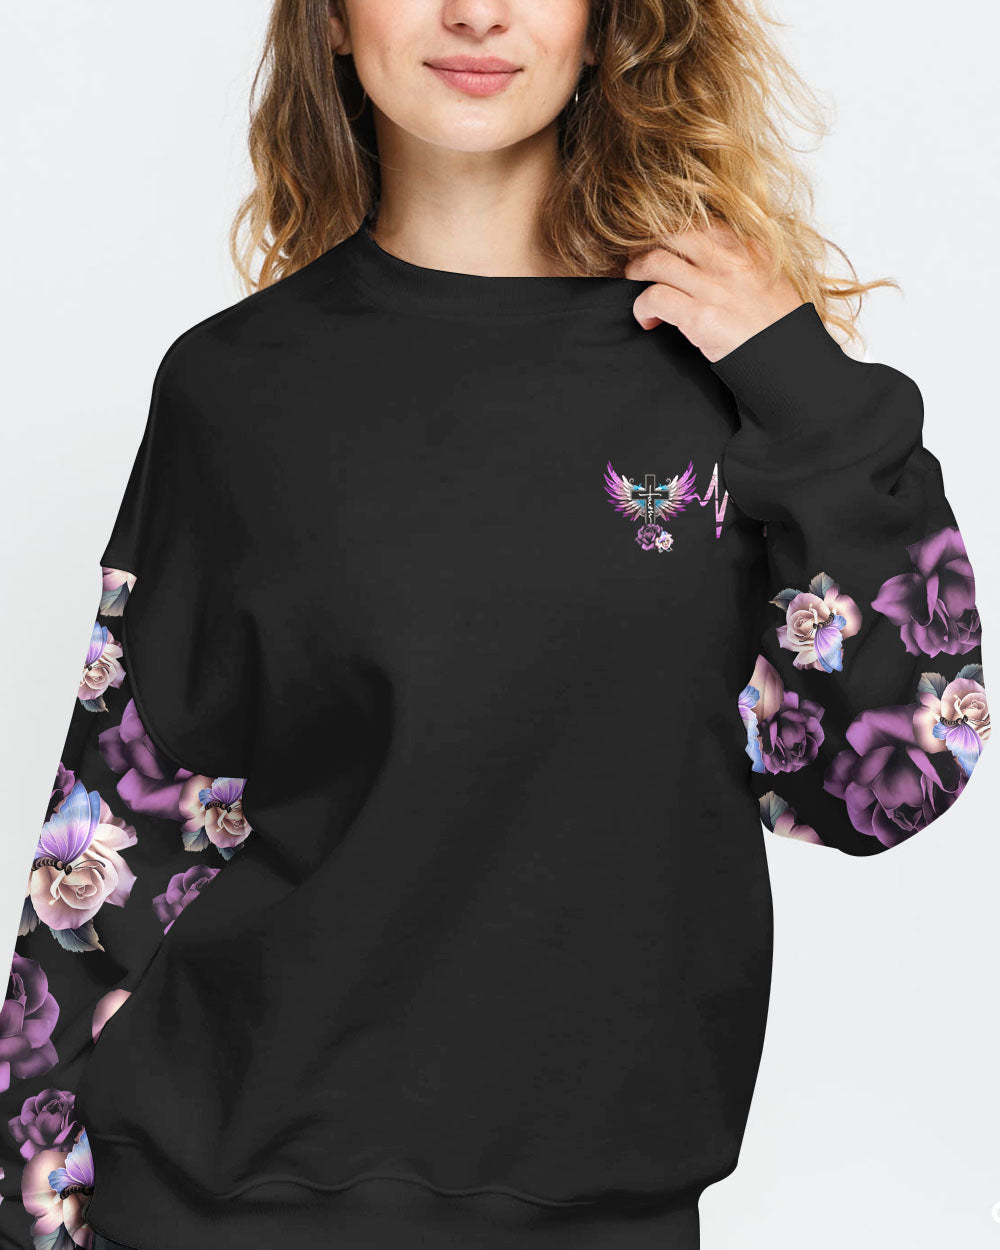 Floral Rose Butterfly Wings Women's Christian Sweatshirt